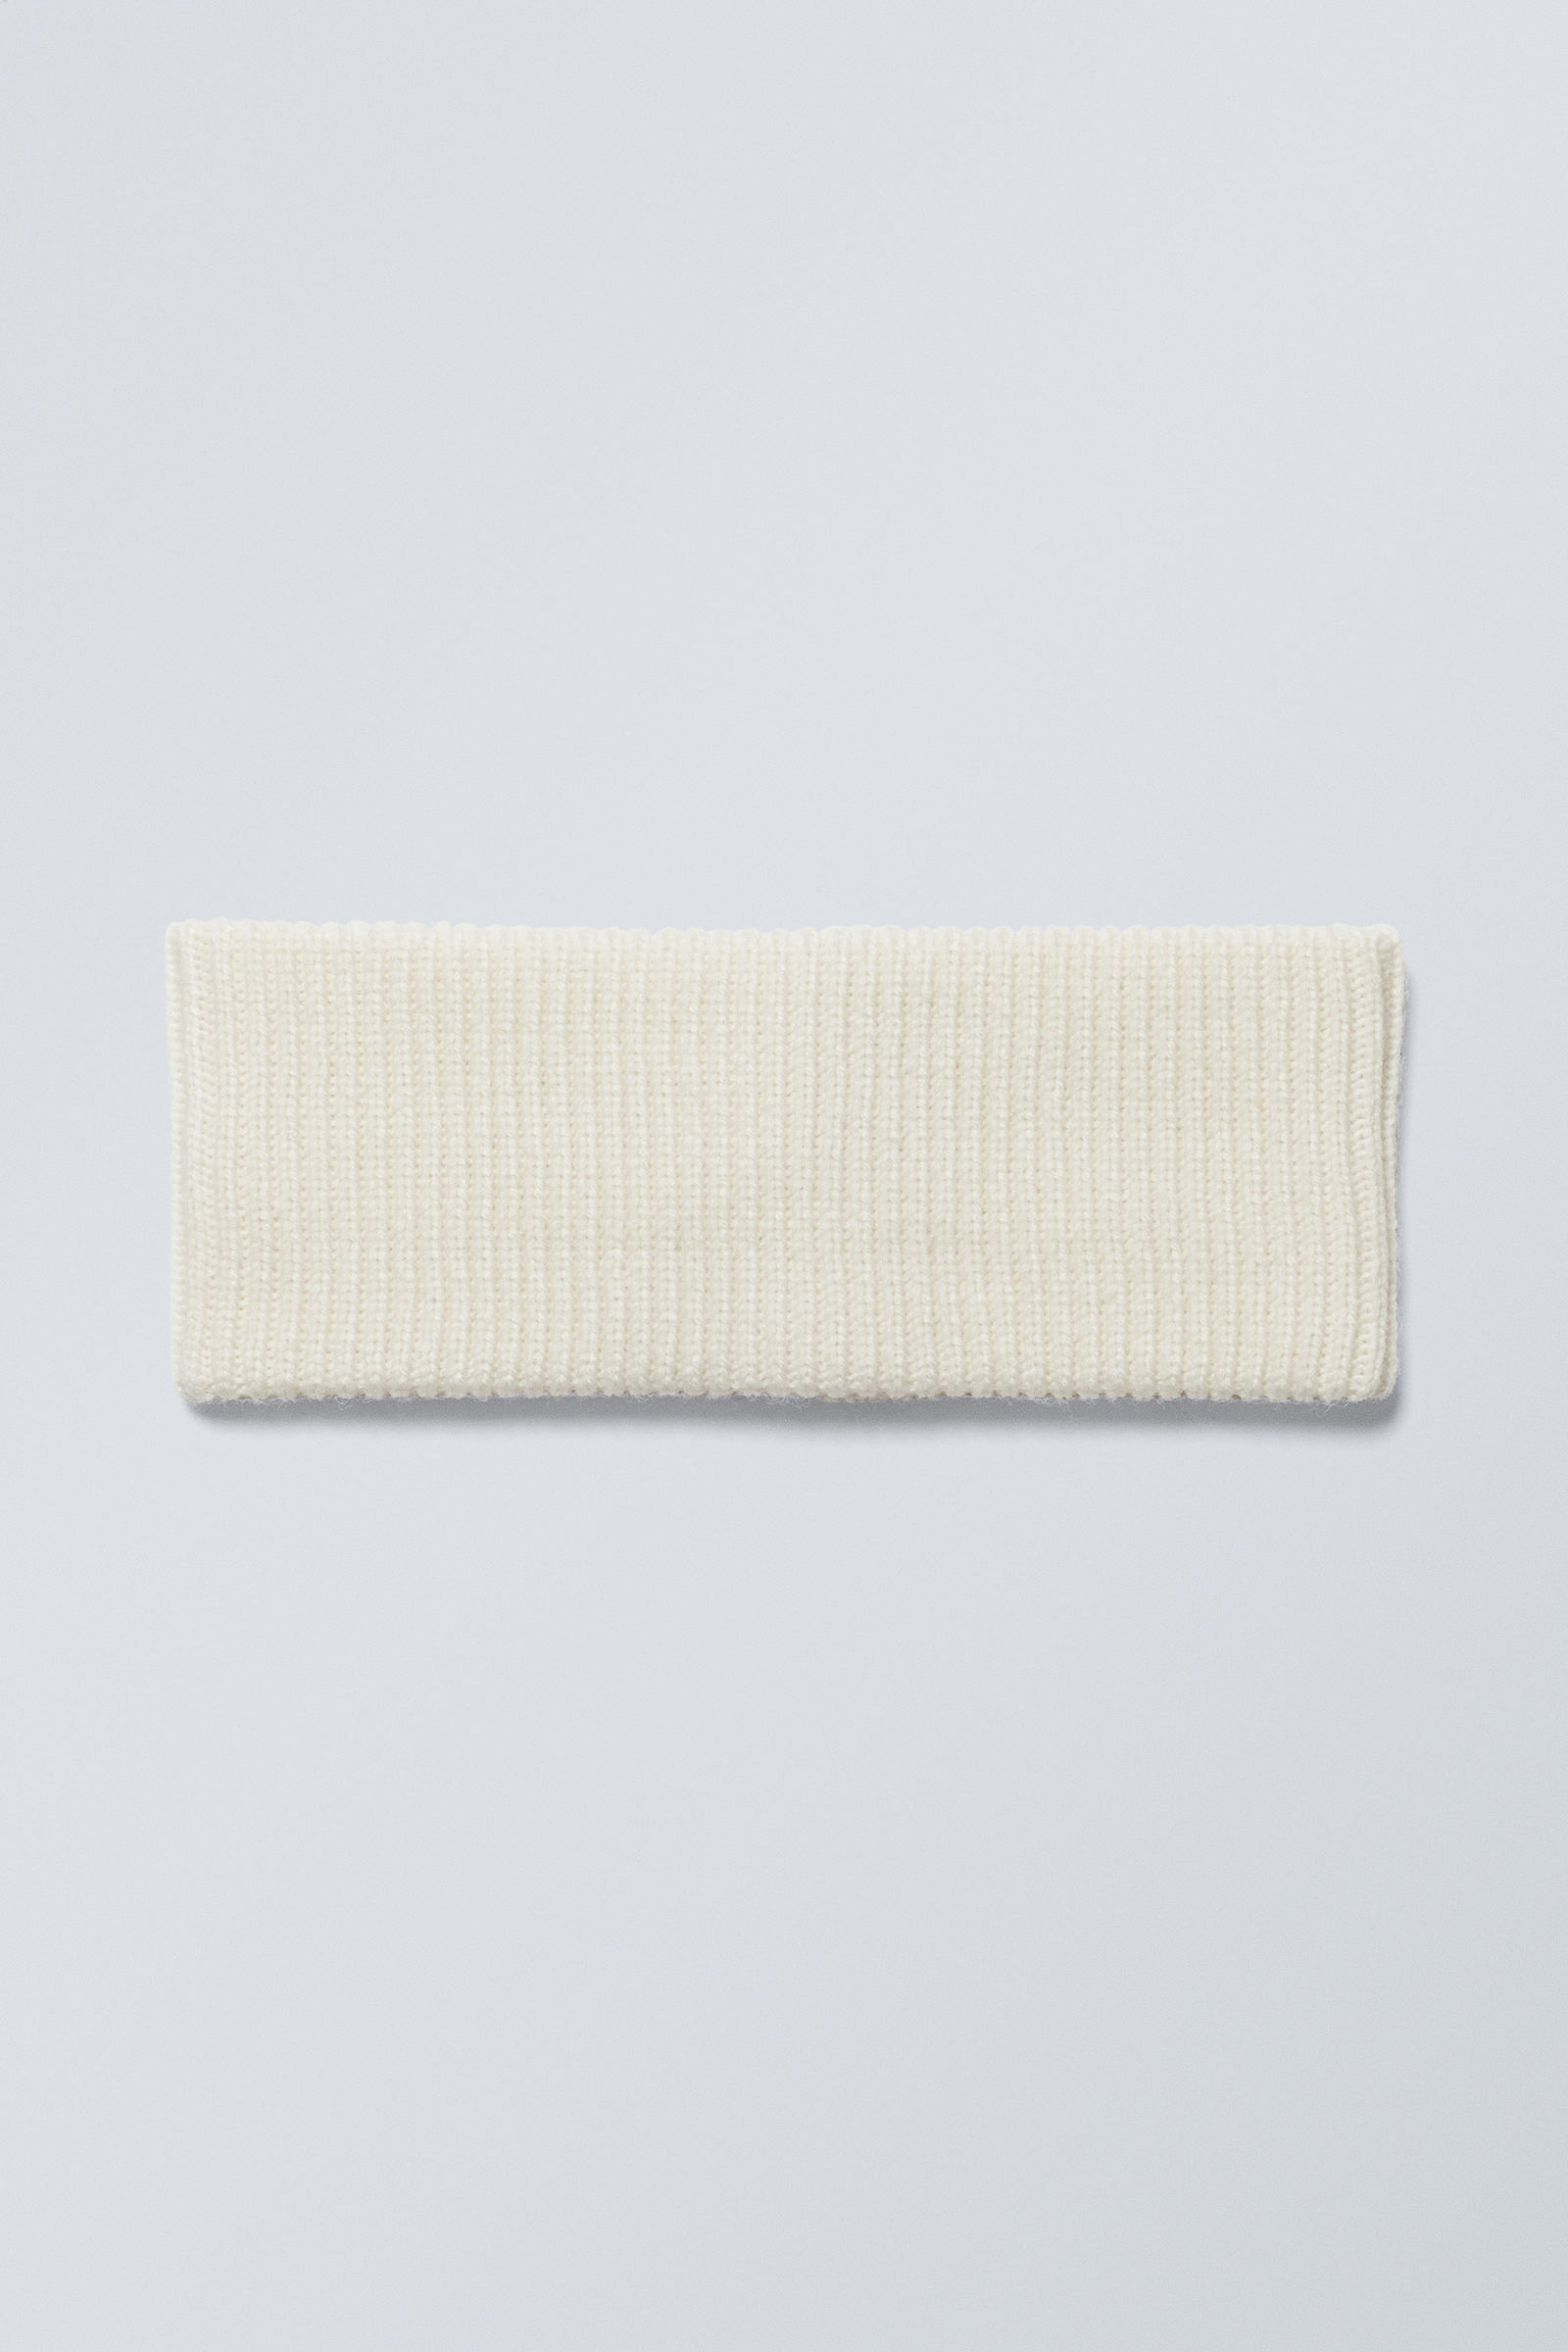 Dusty White - Elsa Ribbed Knit Headband - 2